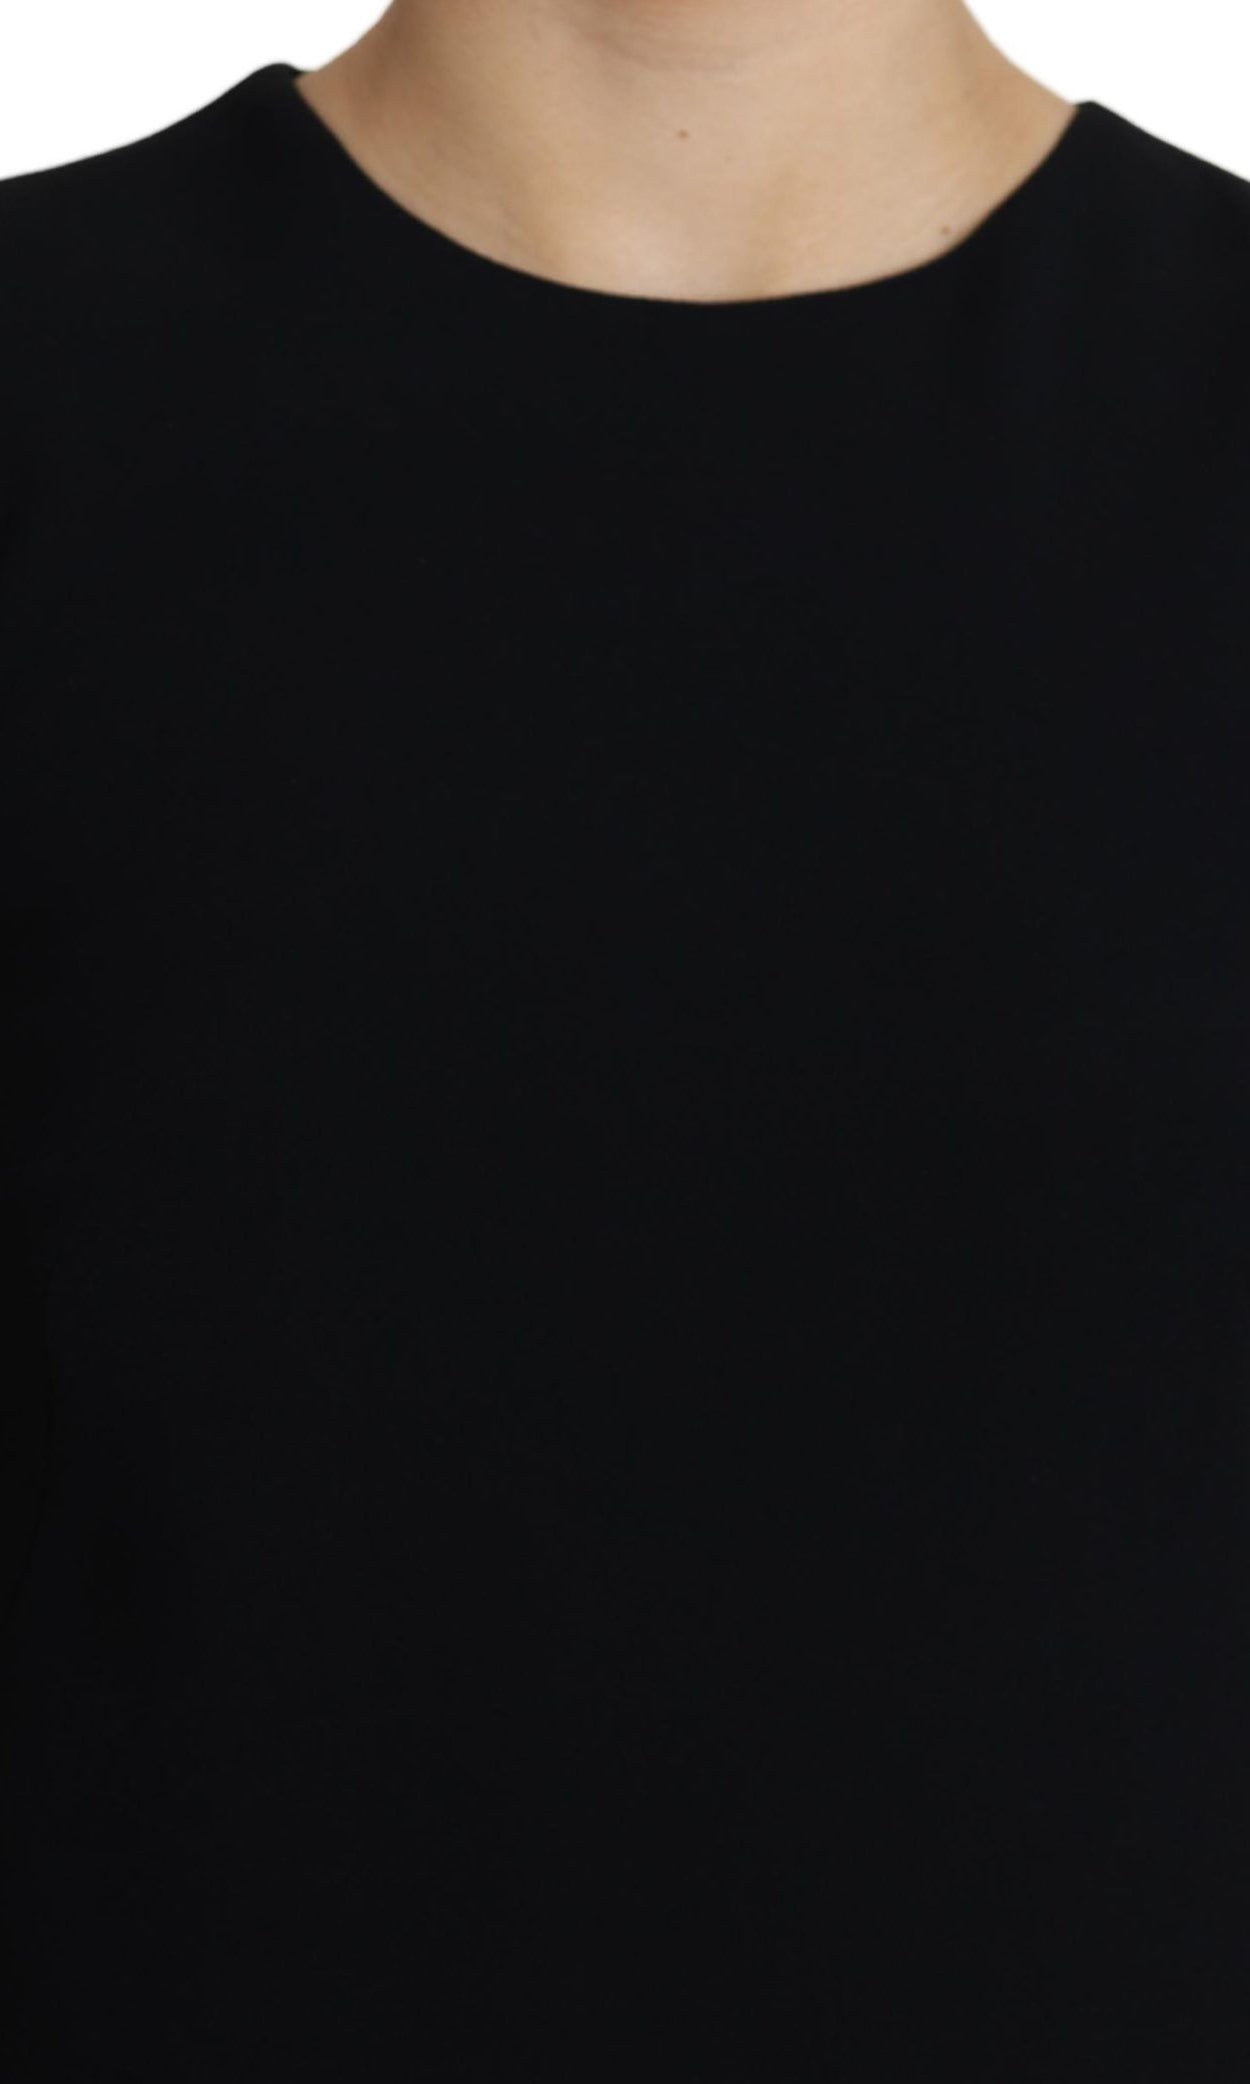 Dolce & Gabbana Black Viscose Stretch A-line Shift Mini Dress GENUINE AUTHENTIC BRAND LLC